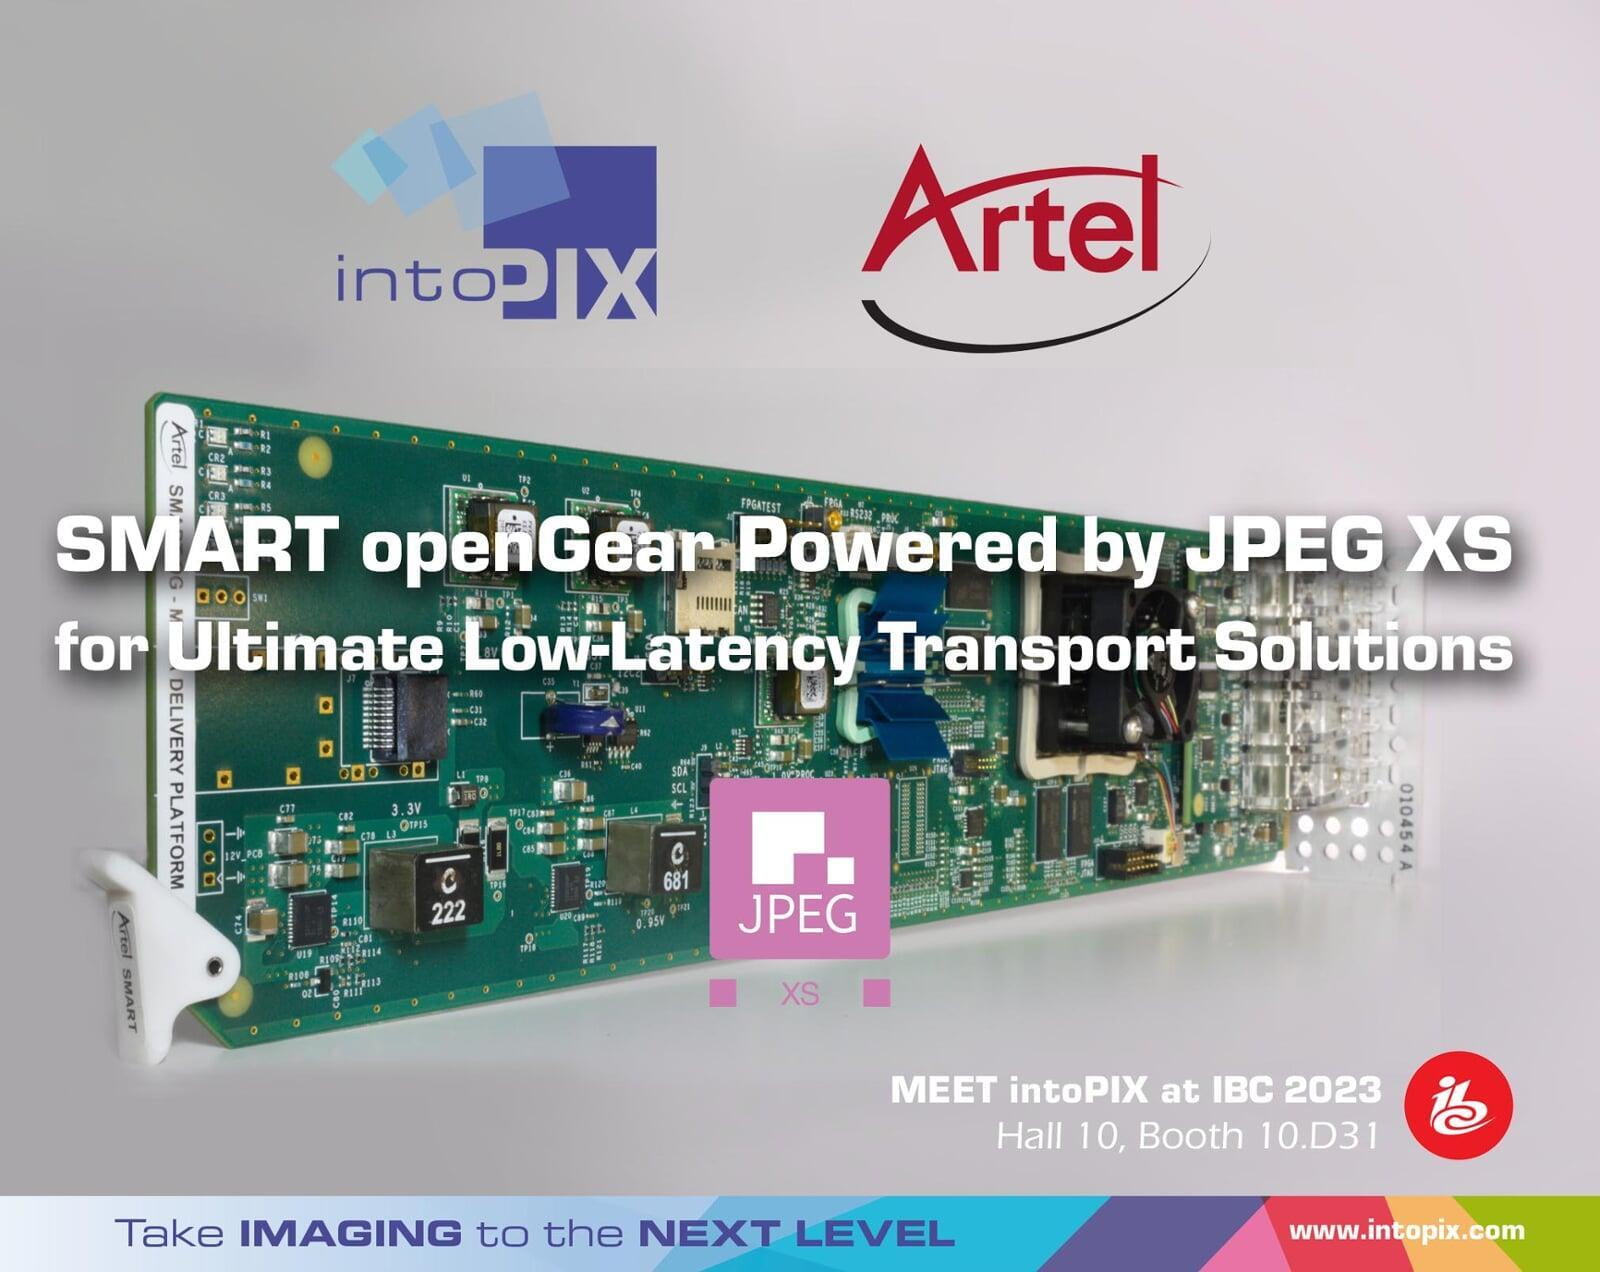 增强型 Artel SMART openGear® 利用intoPIX JPEG  XS 技术实现终极低延迟传输解决方案